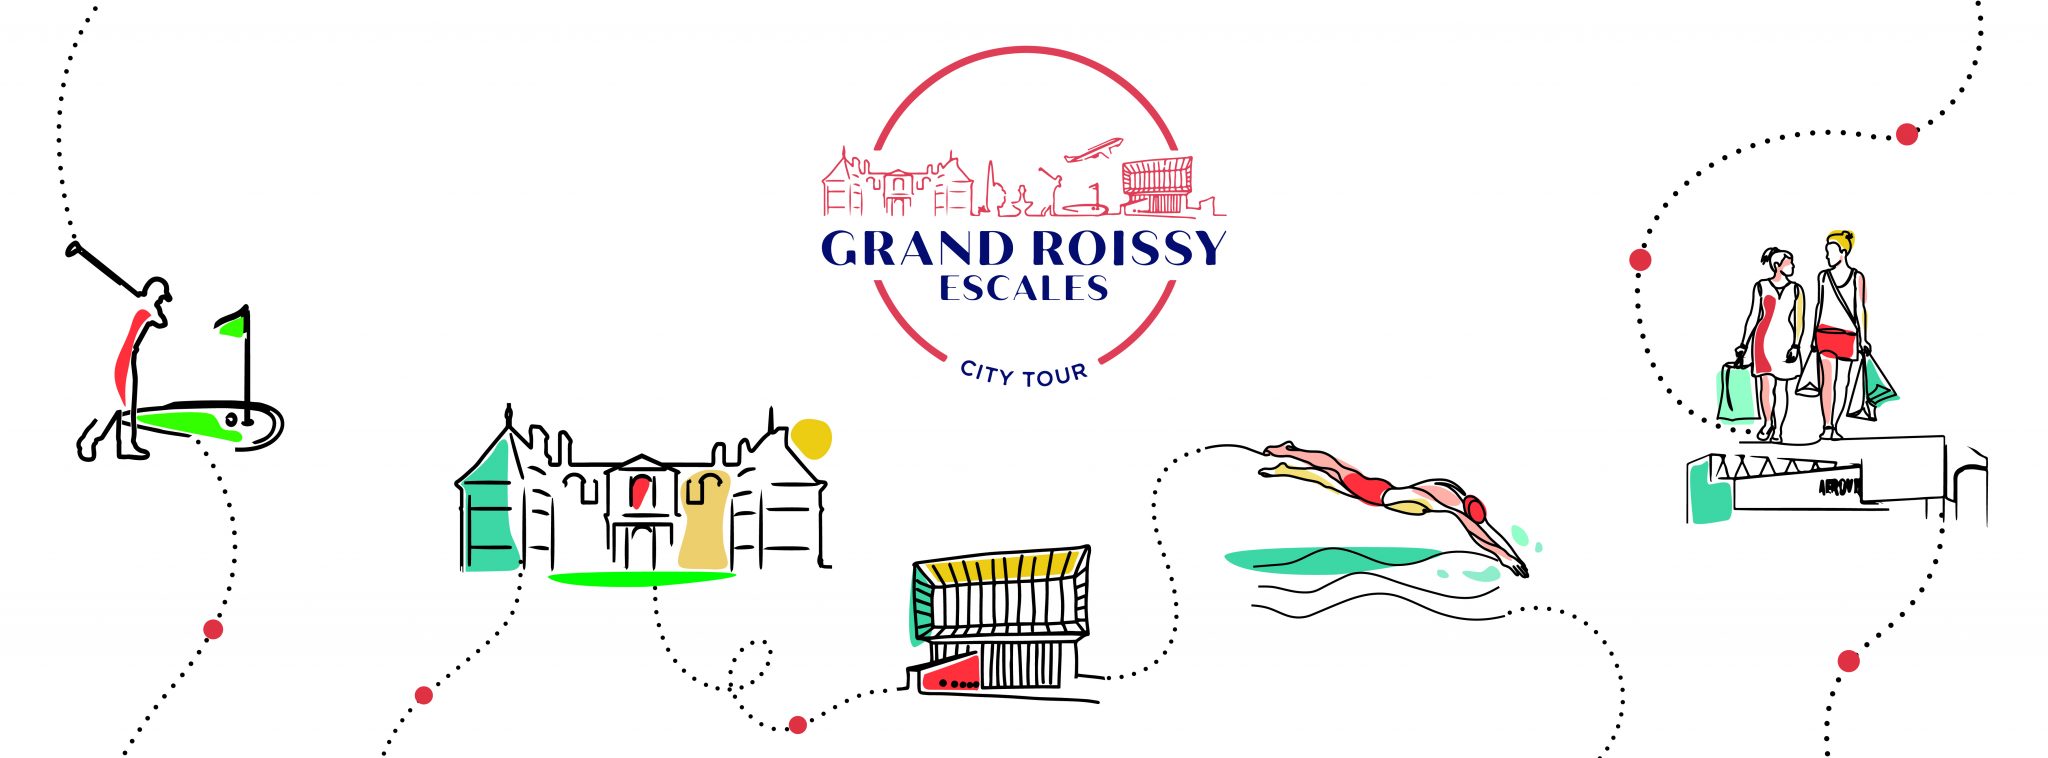 L’Office de Tourisme Grand Roissy lance son City Tour